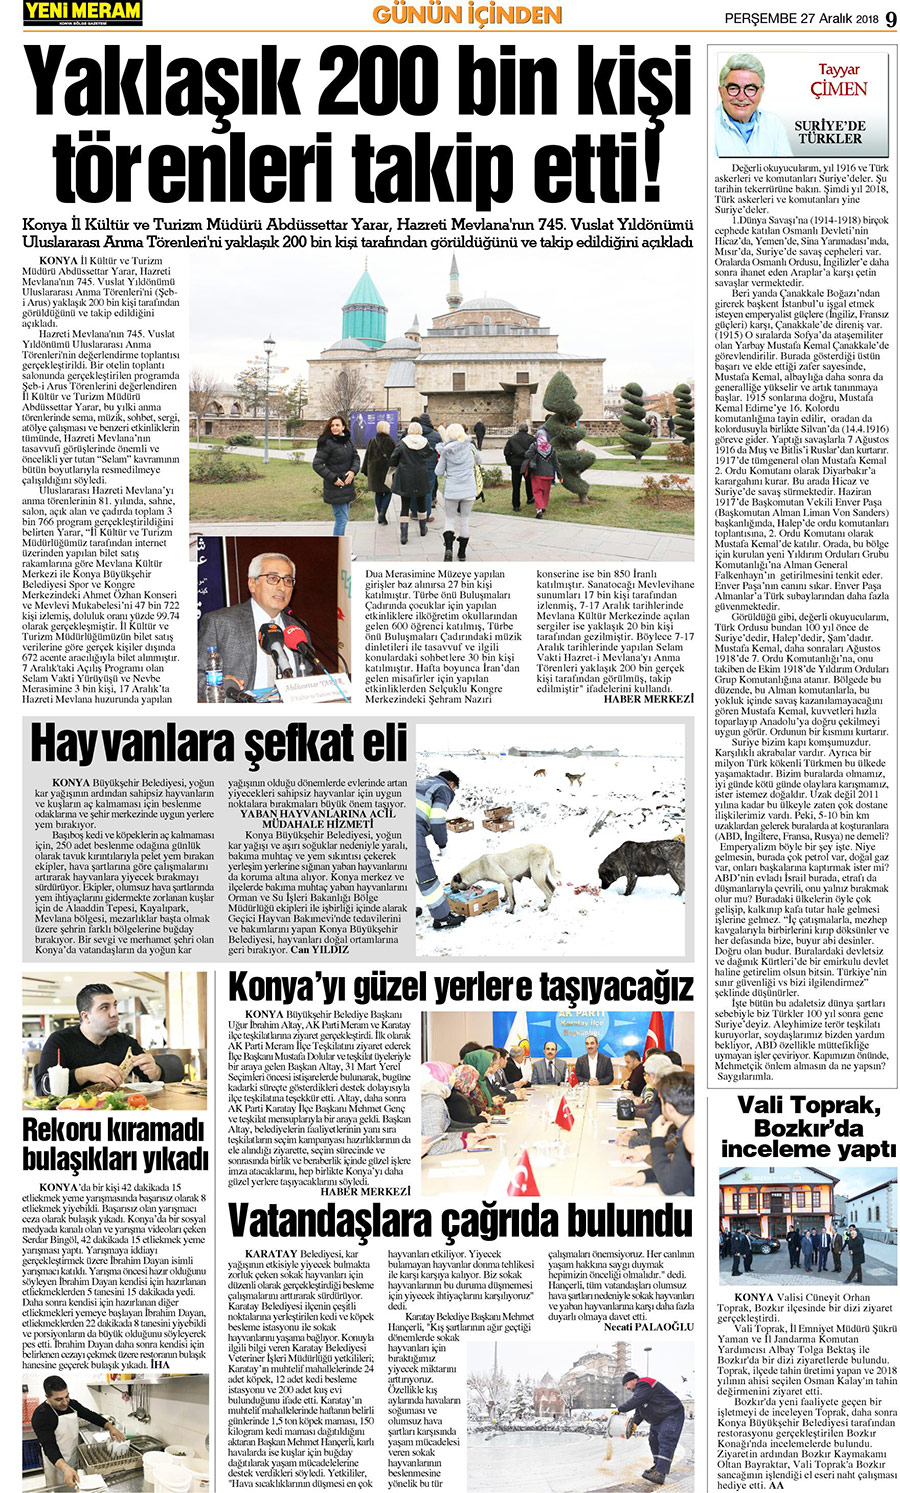 27 Aralık 2018 Yeni Meram Gazetesi